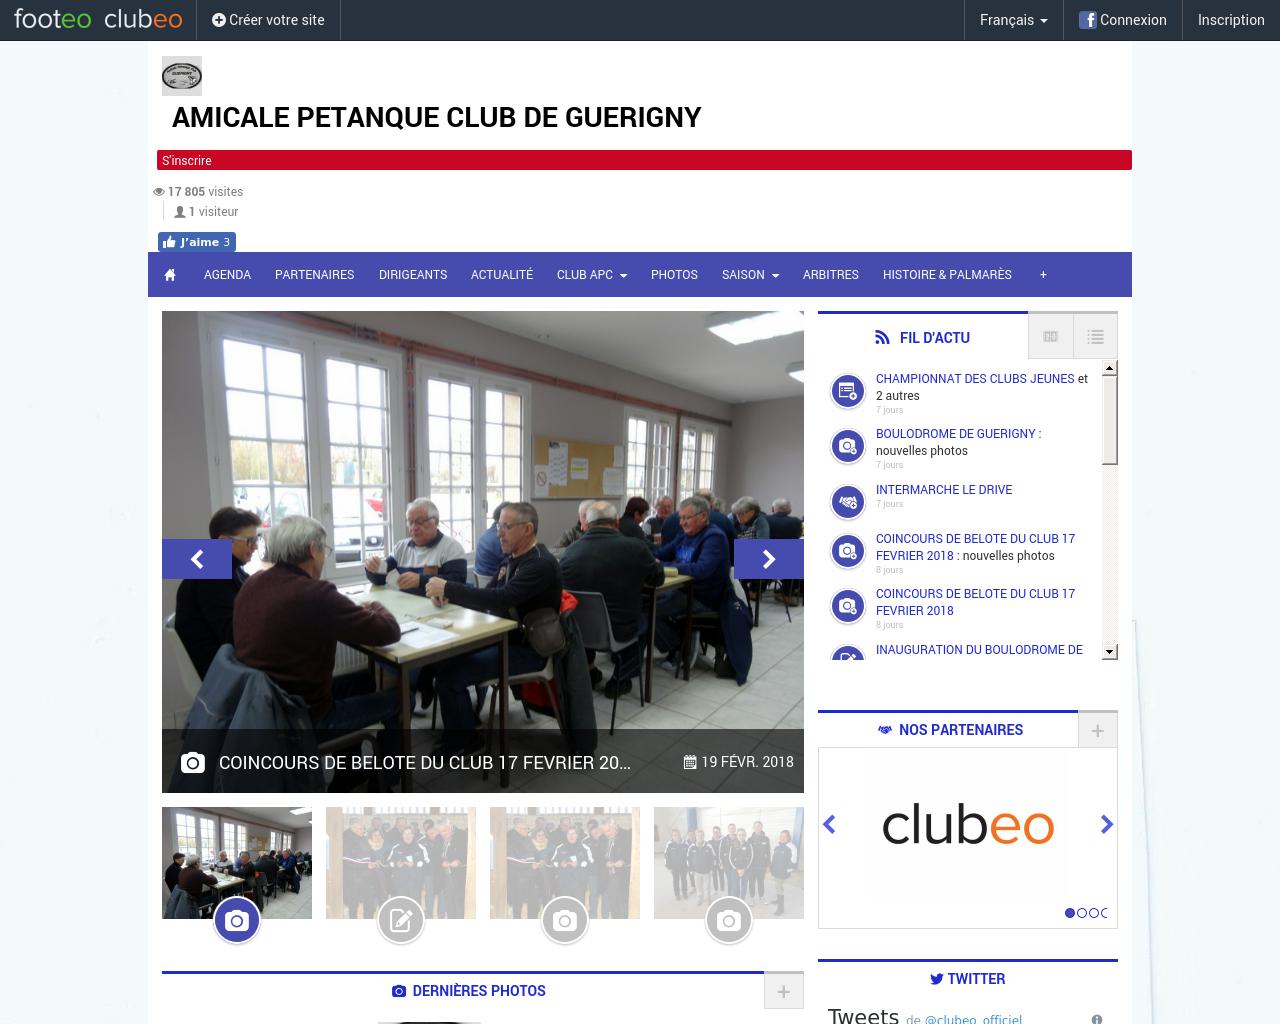 Amicale Petanque Club de Guérigny